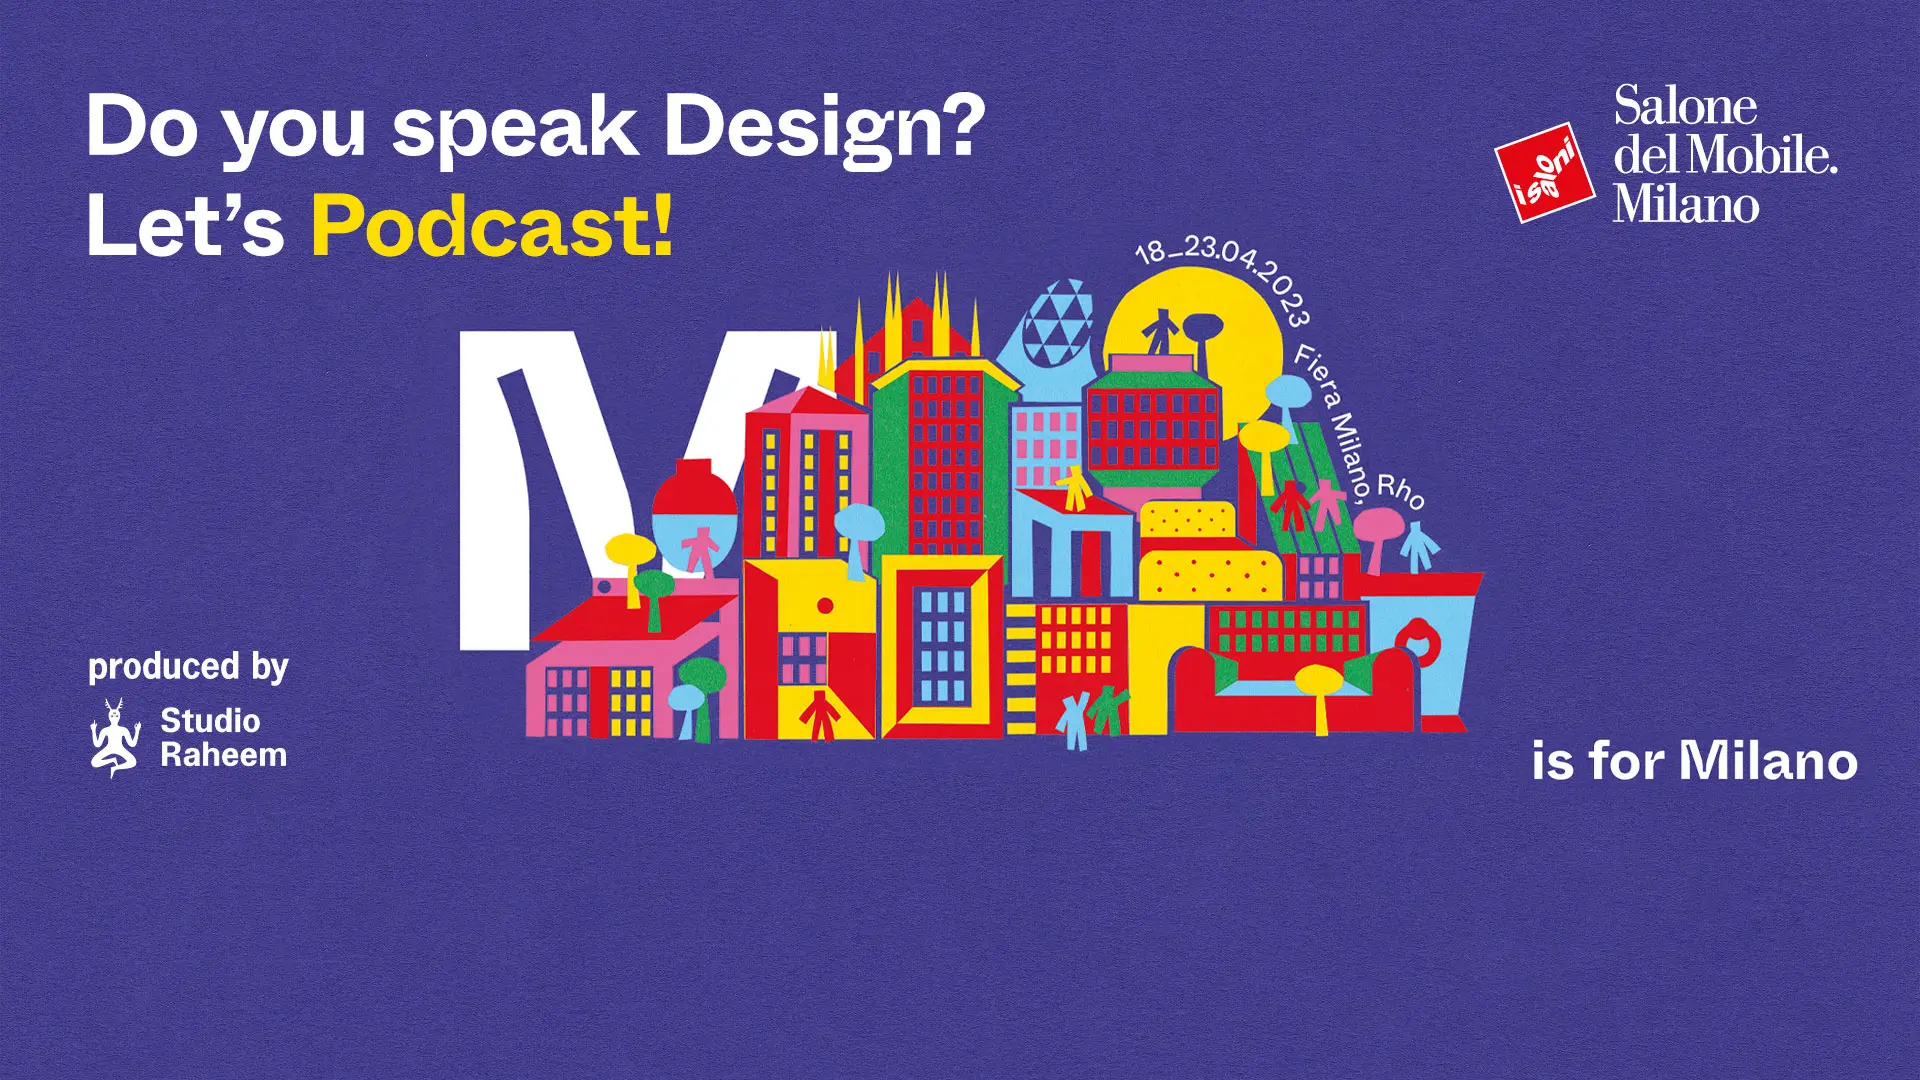 podcast, do you speak design, salone del mobile, salone milano